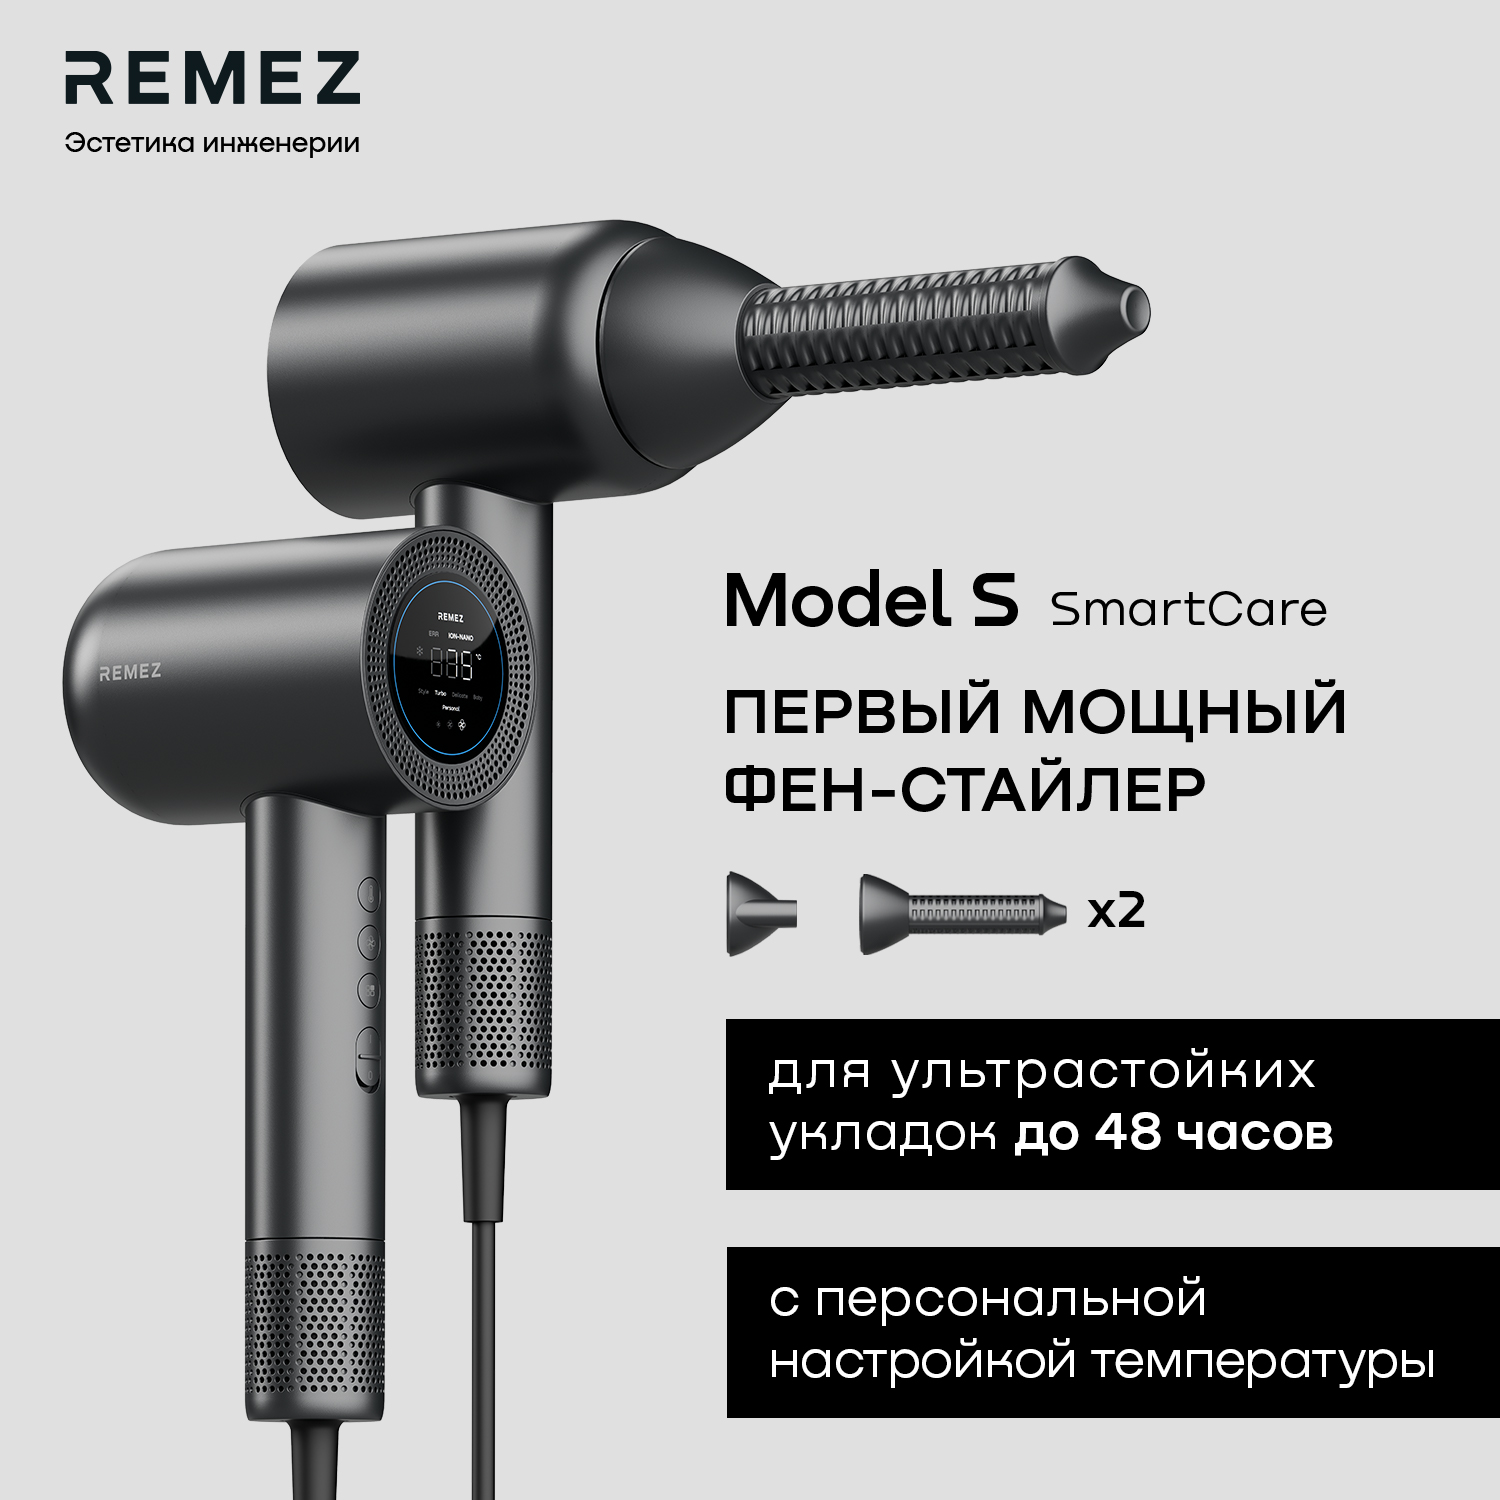 Фен Remez RMB-707 1600 Вт серый краб для волос софия волны 7 см микс